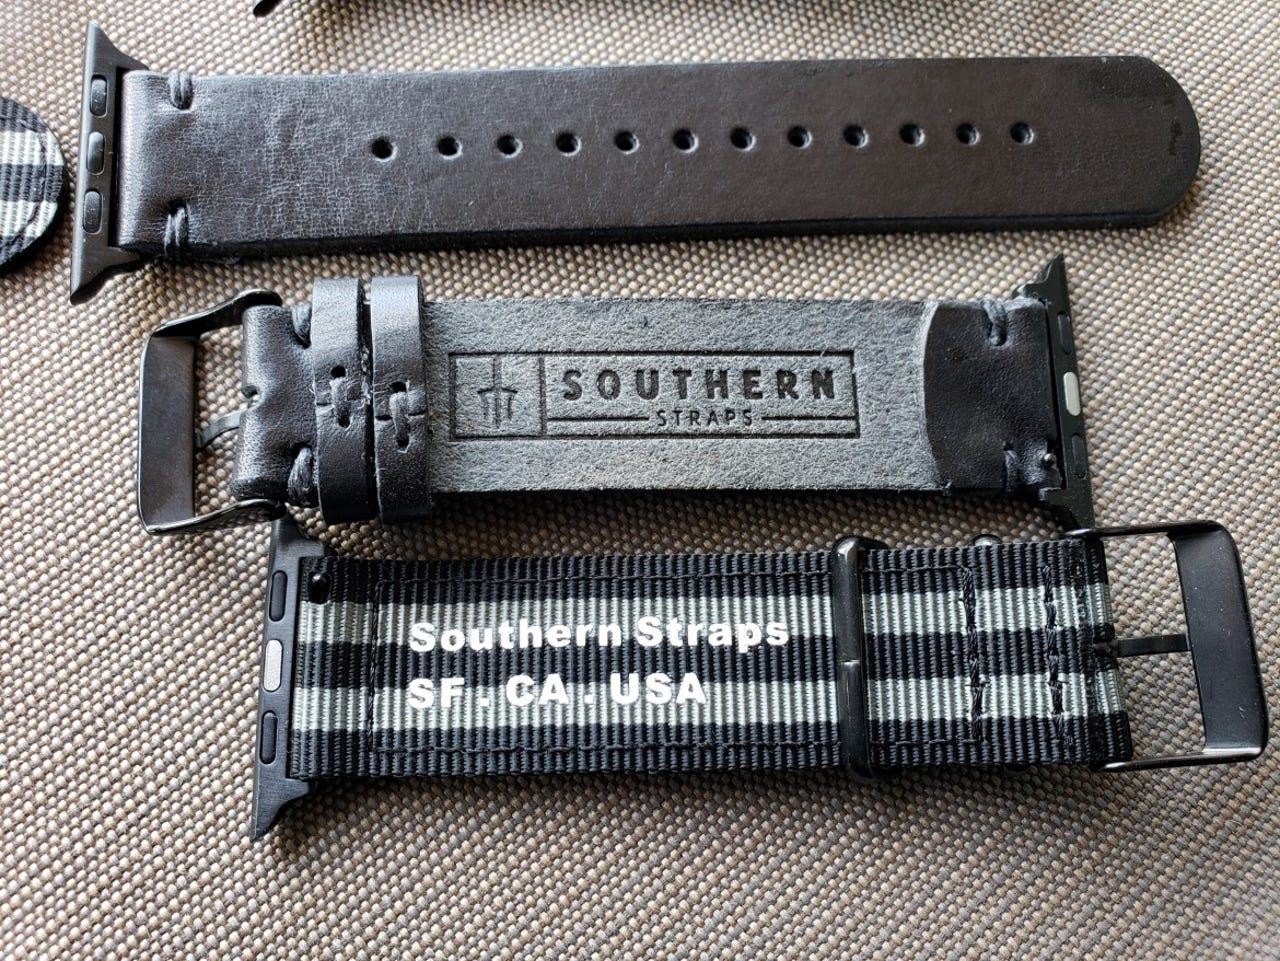 aw-southern-straps-8.jpg